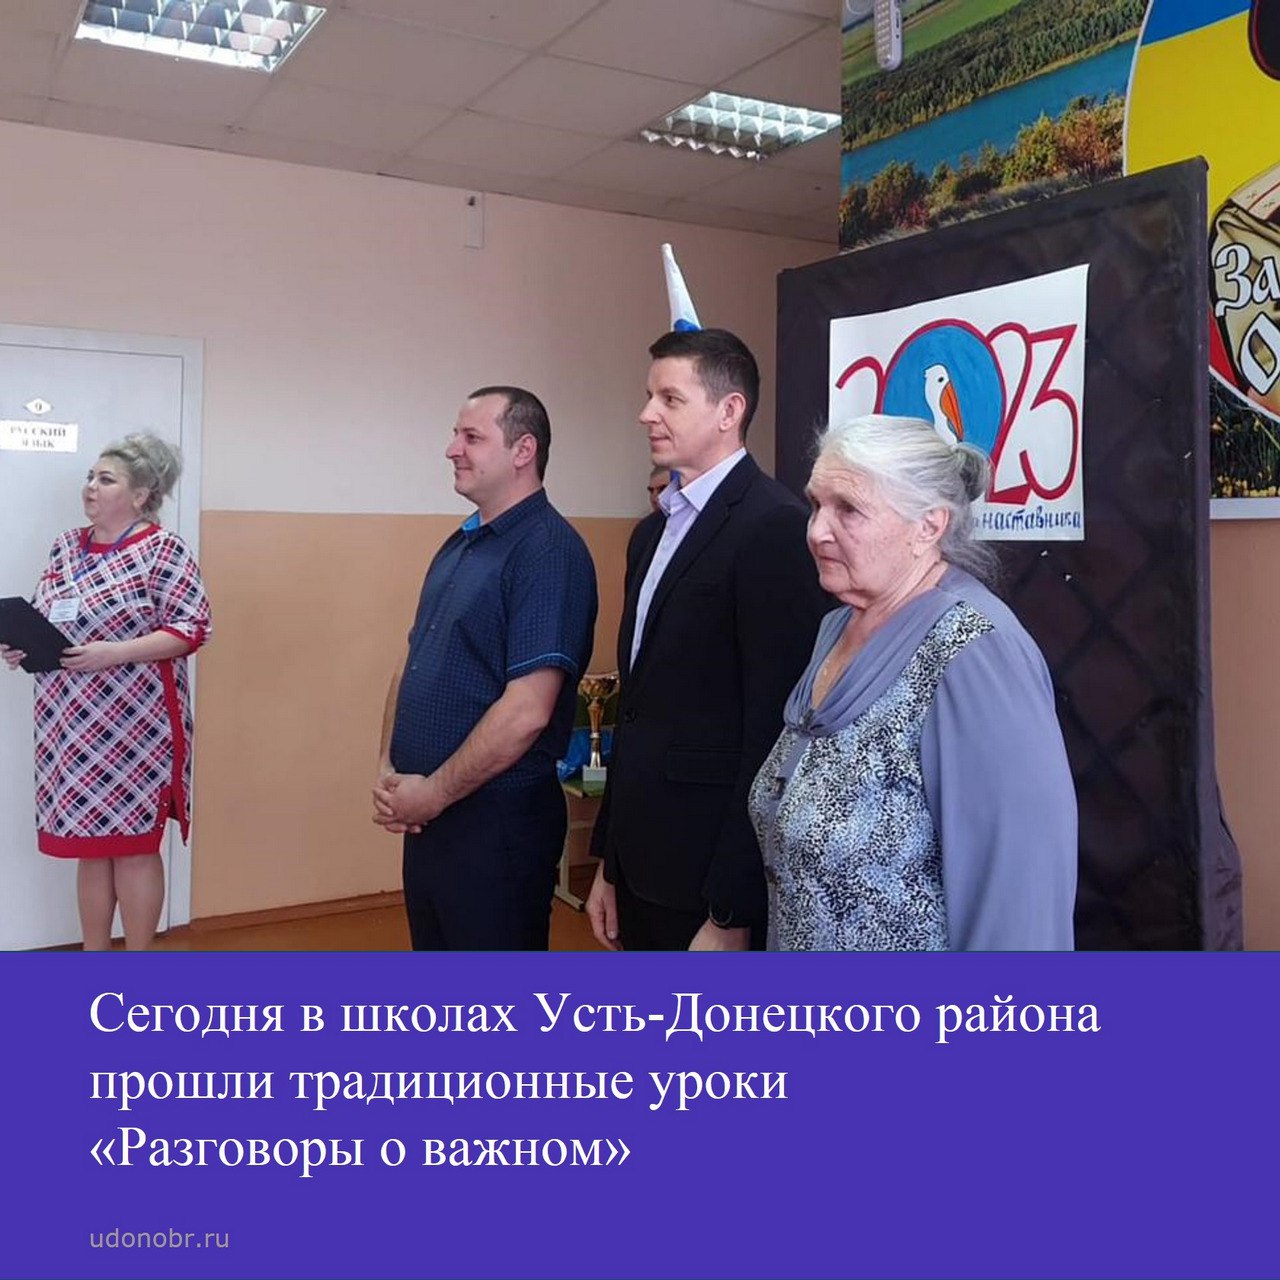 Сегодня в школах Усть-Донецкого района прошли традиционные уроки «Разговор о важном»